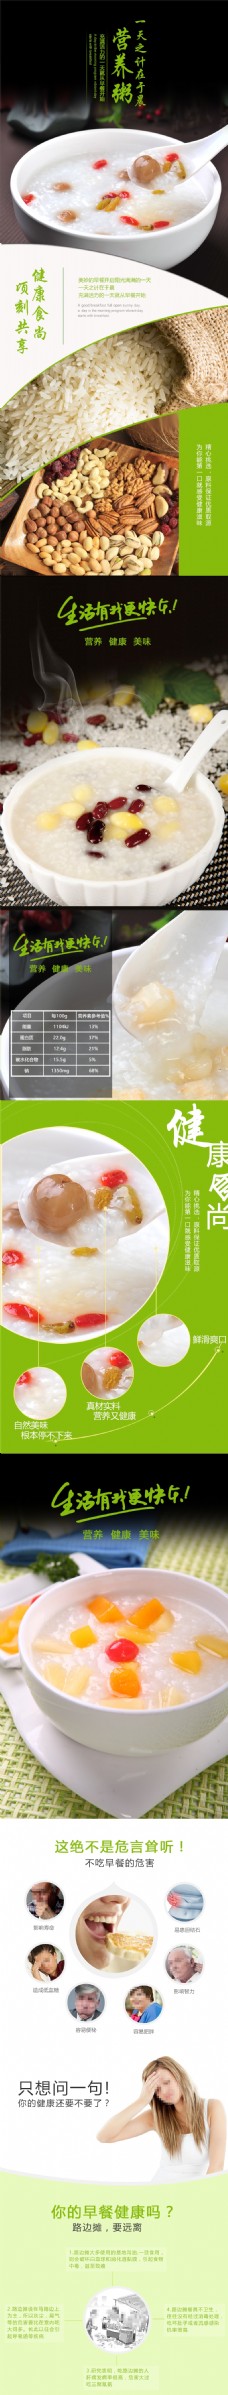 淘宝电商天猫美食食品营养米粥详情页psd模板